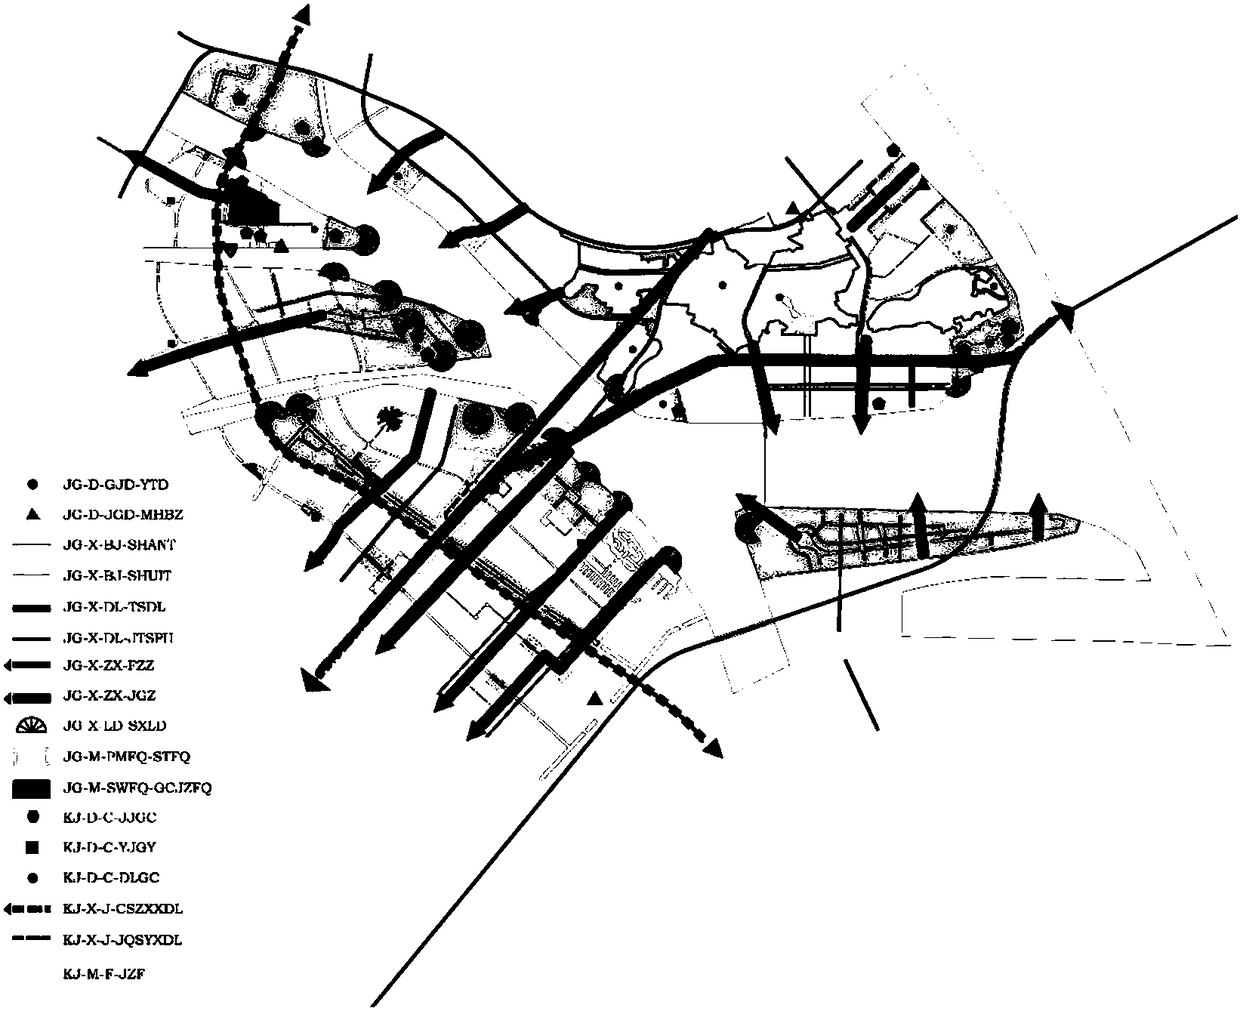 Digital translation and application method for city design